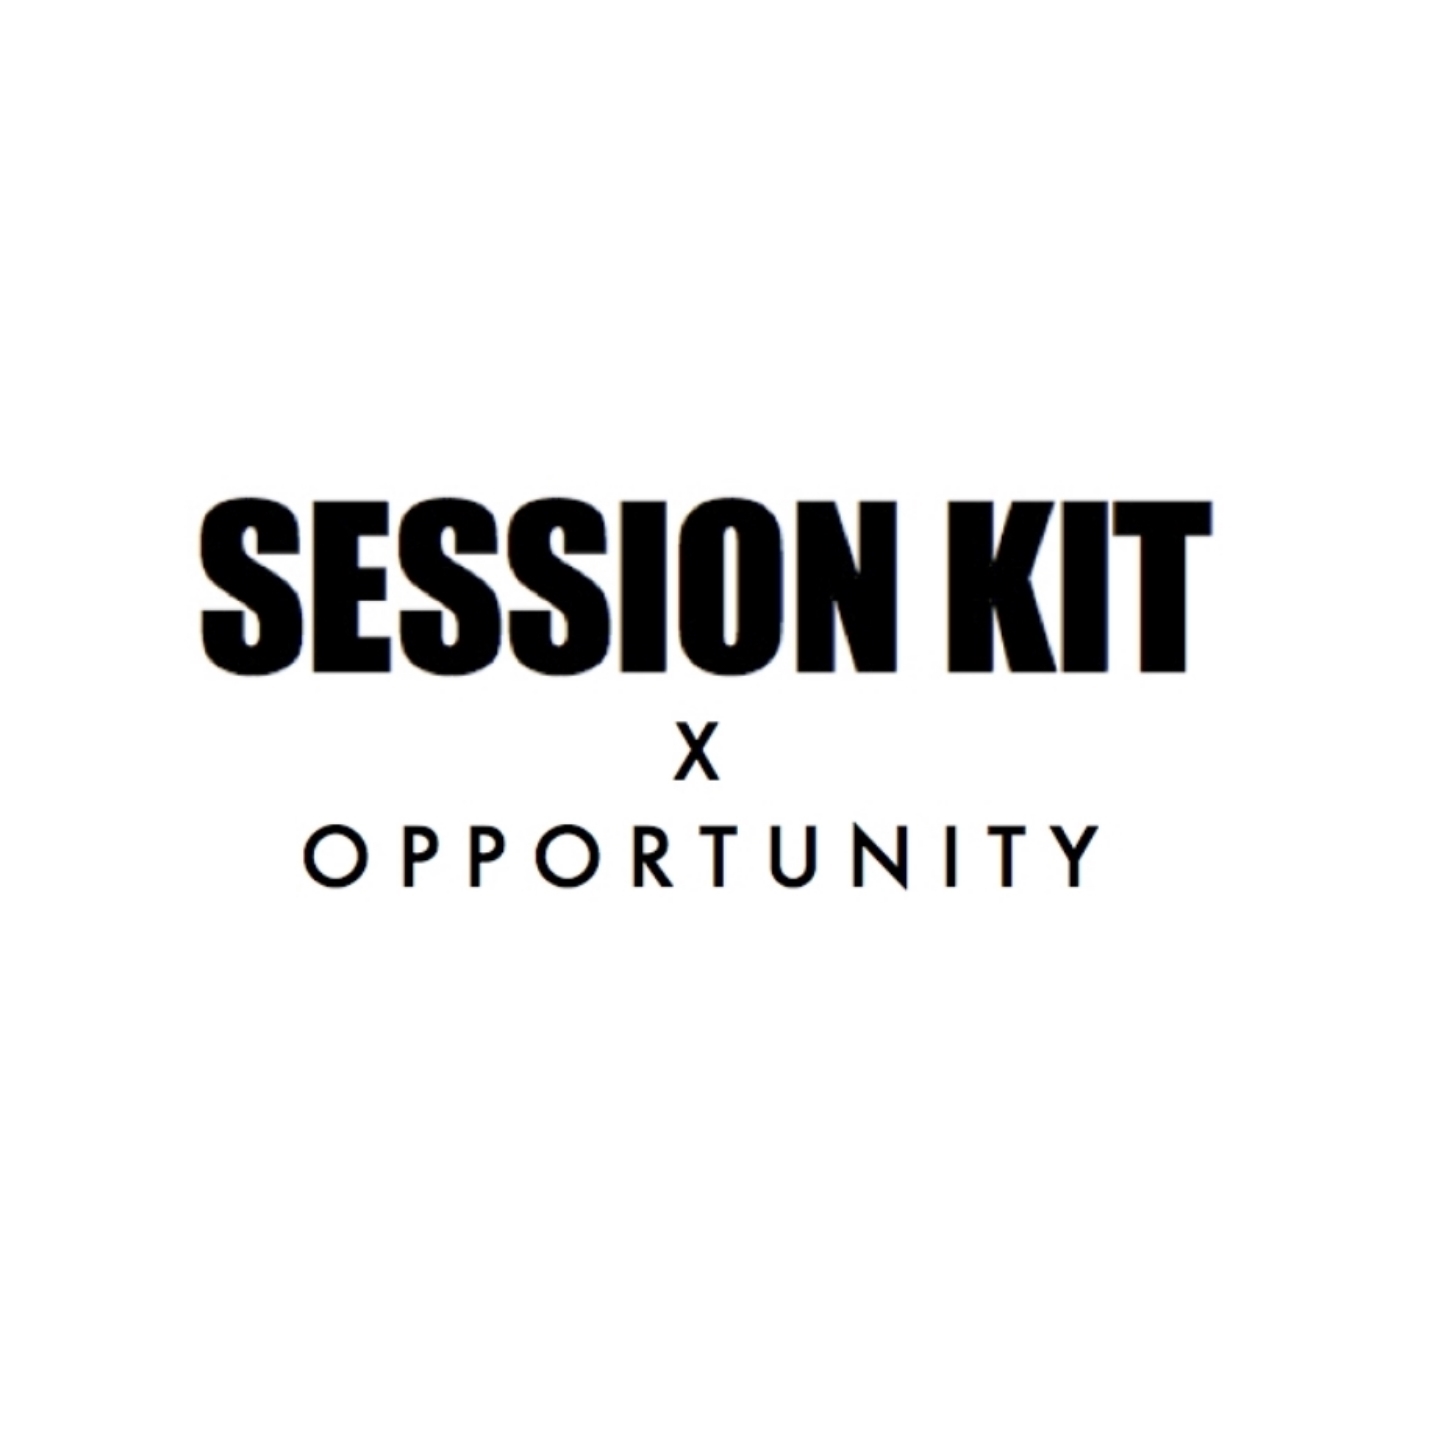 session kit oppotunity.jpg